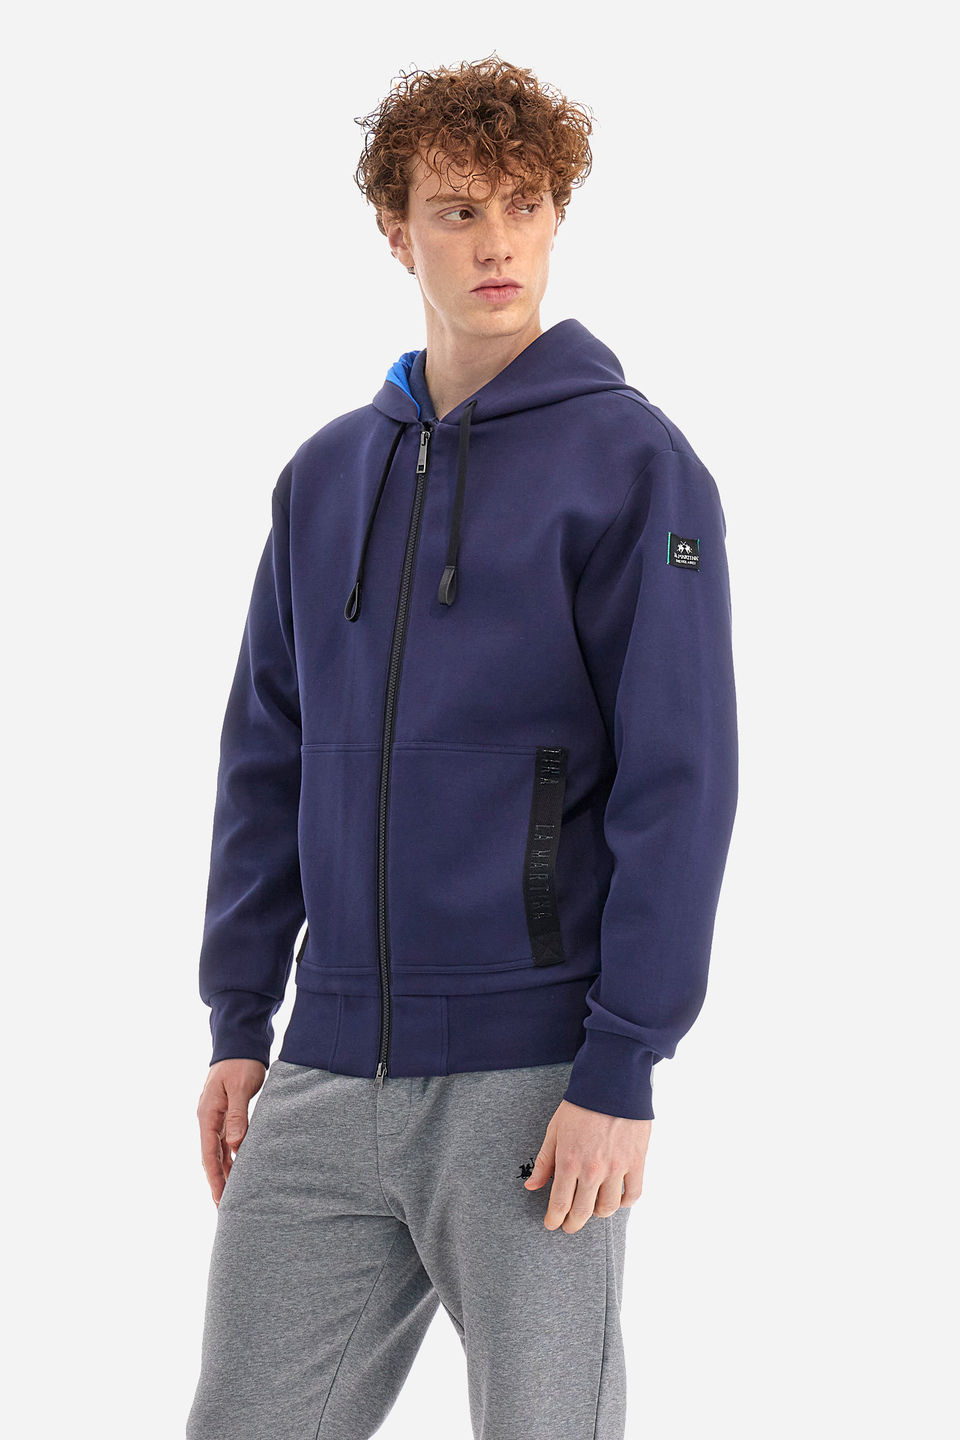 Herren-Sweatshirt Comfort Fit - Woodson | La Martina - Official Online Shop